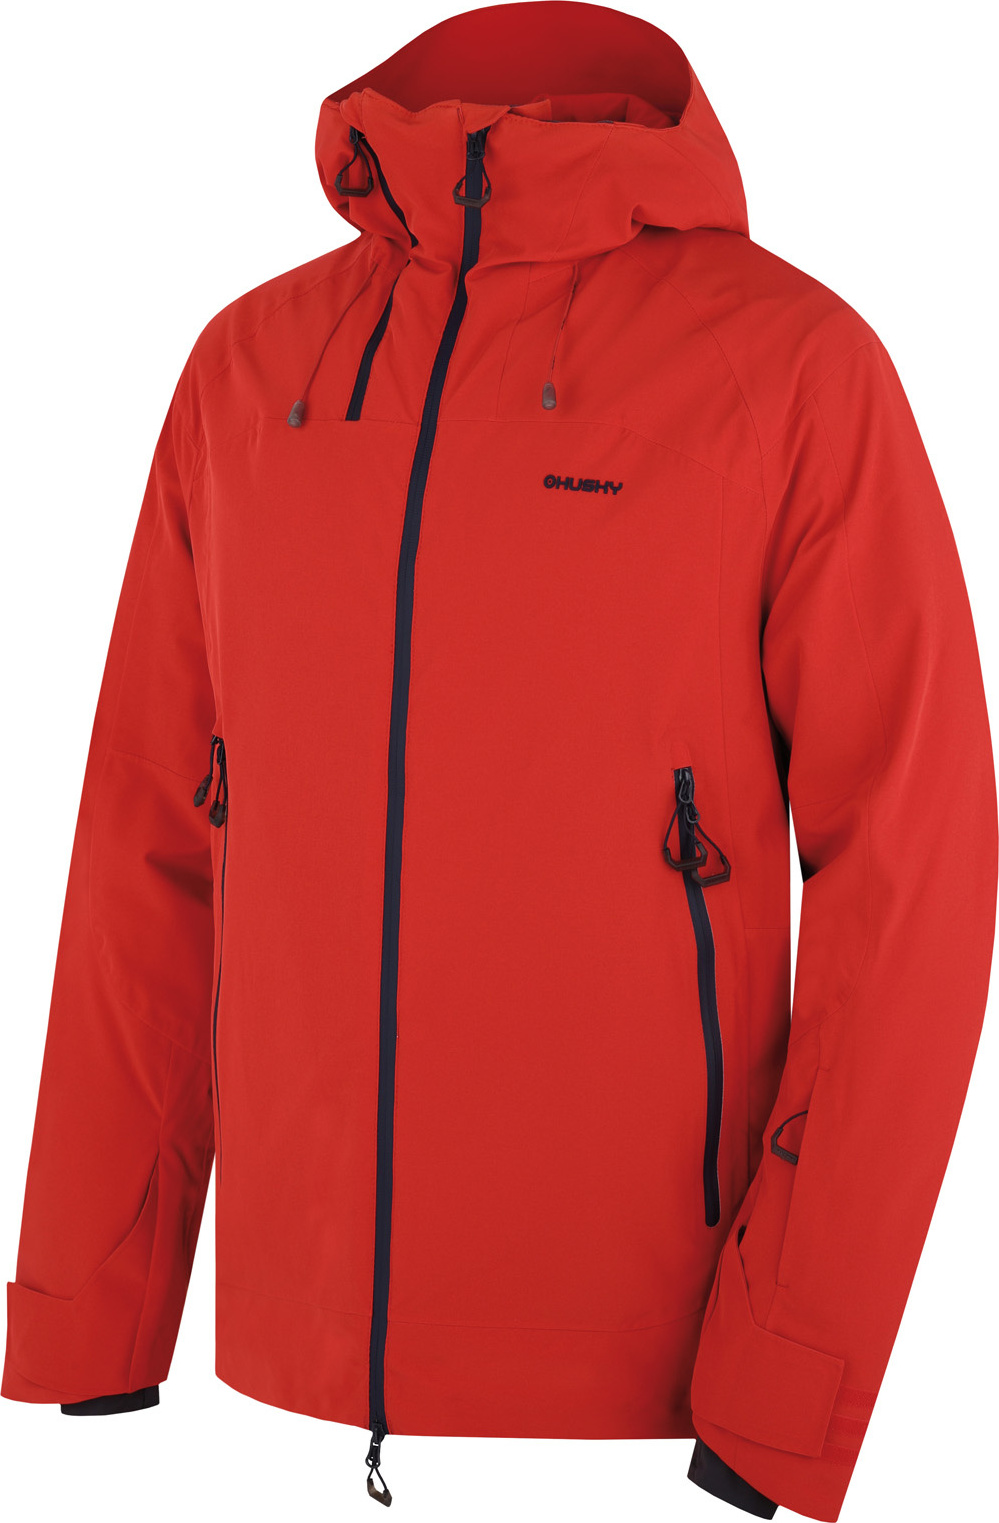 Pánská lyžařská bunda HUSKY Gambola červená Velikost: M